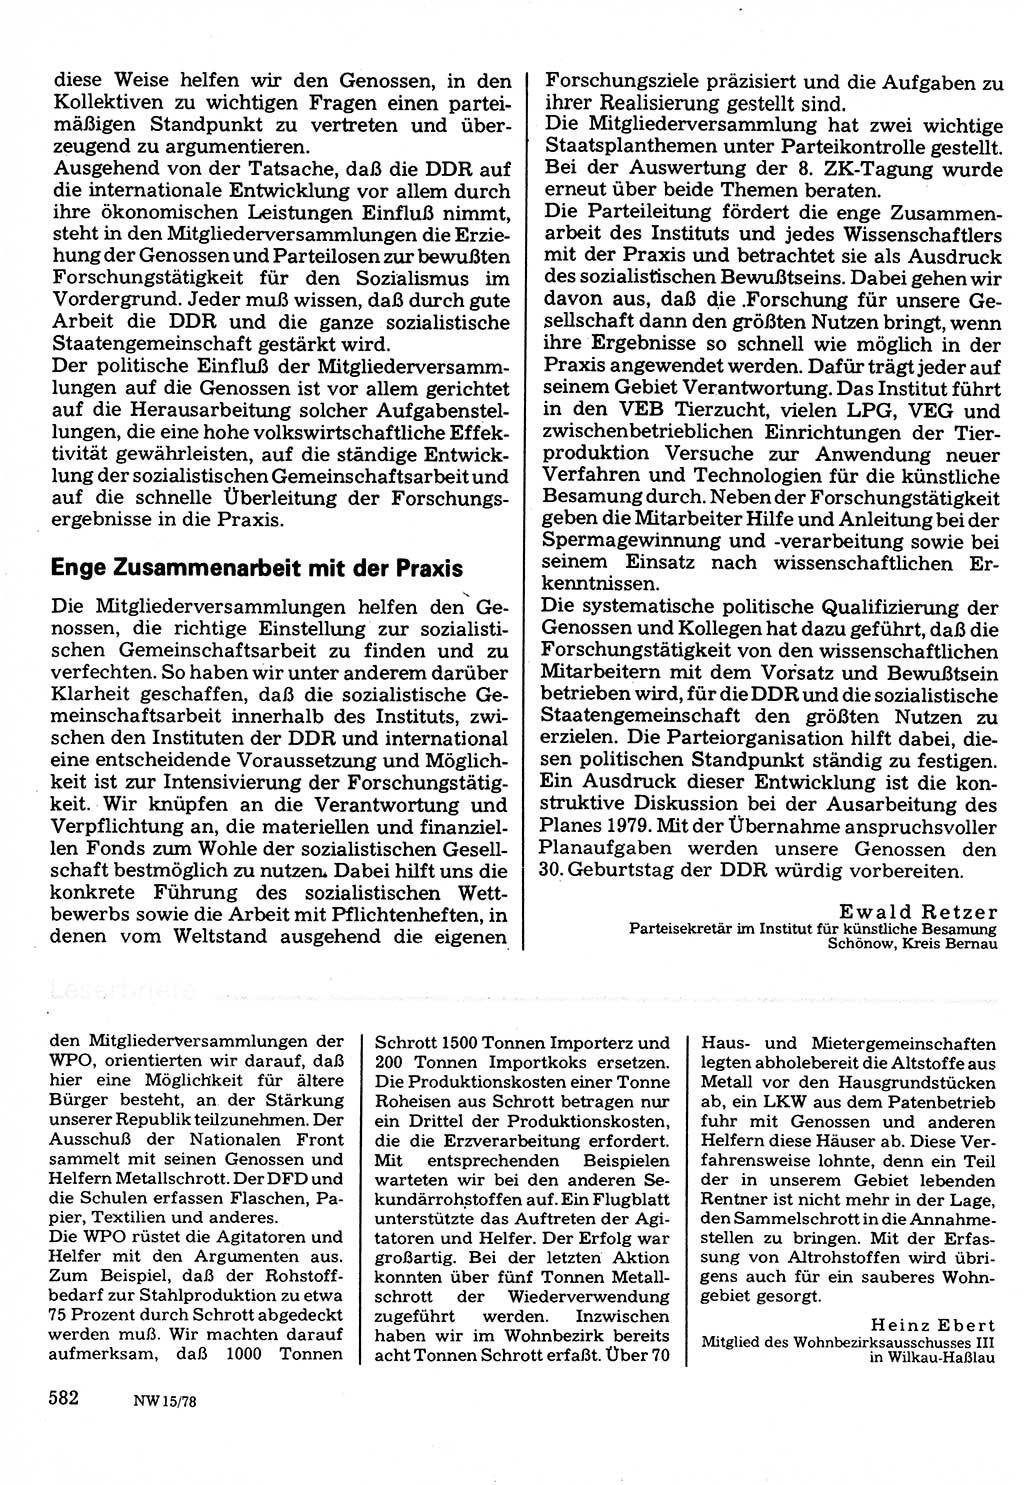 Neuer Weg (NW), Organ des Zentralkomitees (ZK) der SED (Sozialistische Einheitspartei Deutschlands) für Fragen des Parteilebens, 33. Jahrgang [Deutsche Demokratische Republik (DDR)] 1978, Seite 582 (NW ZK SED DDR 1978, S. 582)